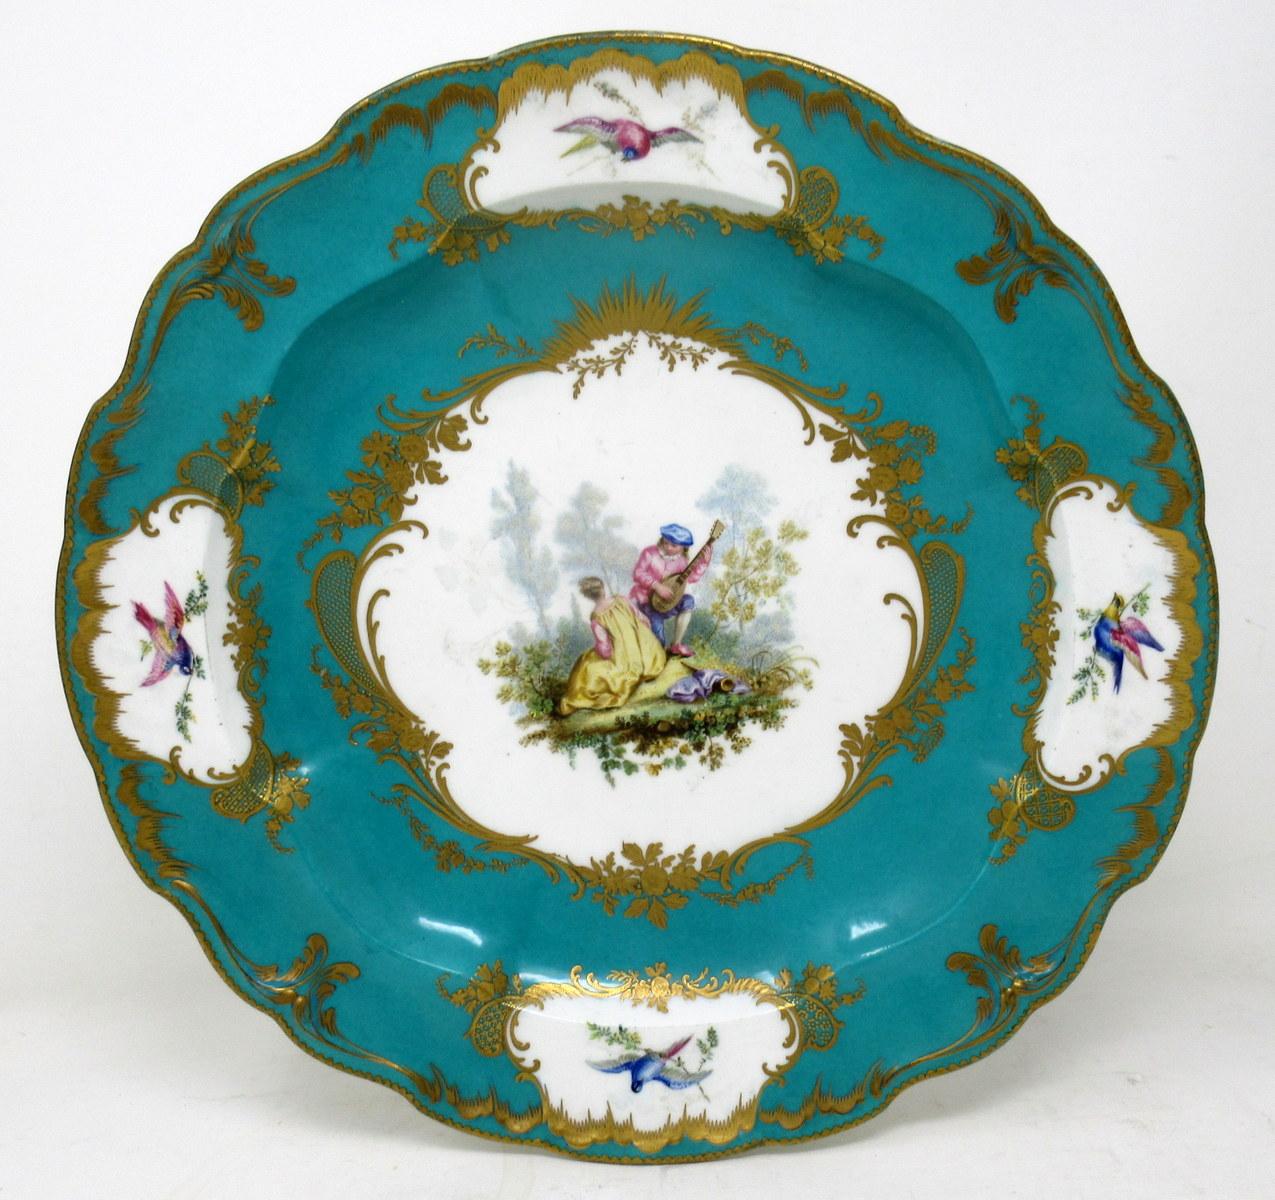 Un centre de table circulaire en porcelaine tendre de style Sèvres exceptionnellement bien peint à la main, un plat profond ou une assiette de cabinet de grandes proportions, de la dernière moitié du XIXe siècle, peut-être plus tôt. 

La réserve